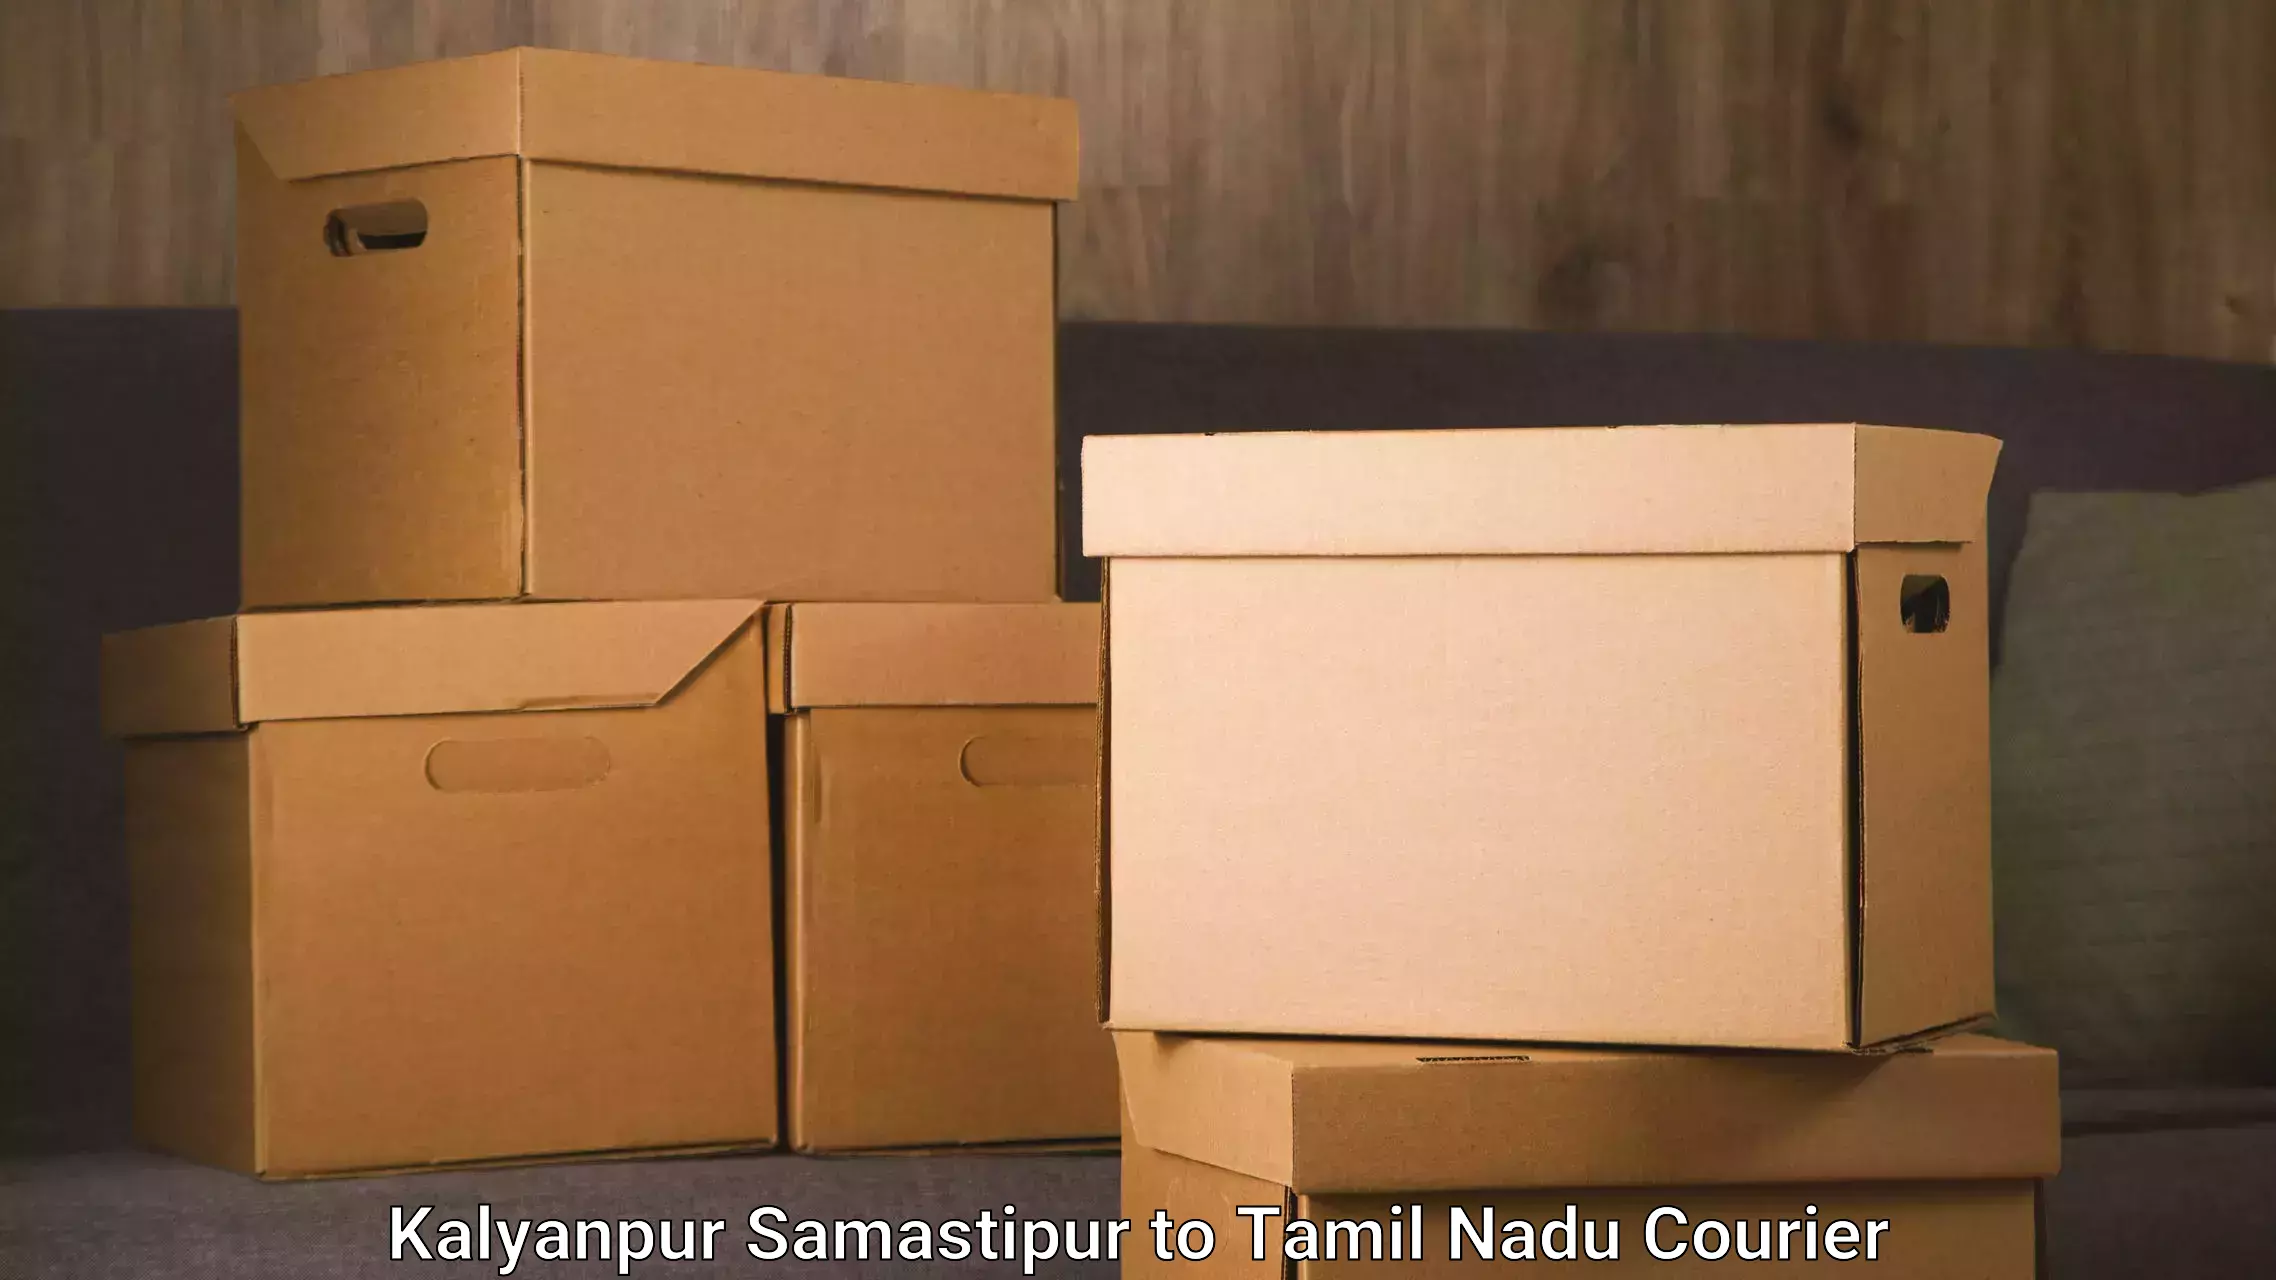 Furniture delivery service Kalyanpur Samastipur to Kanyakumari